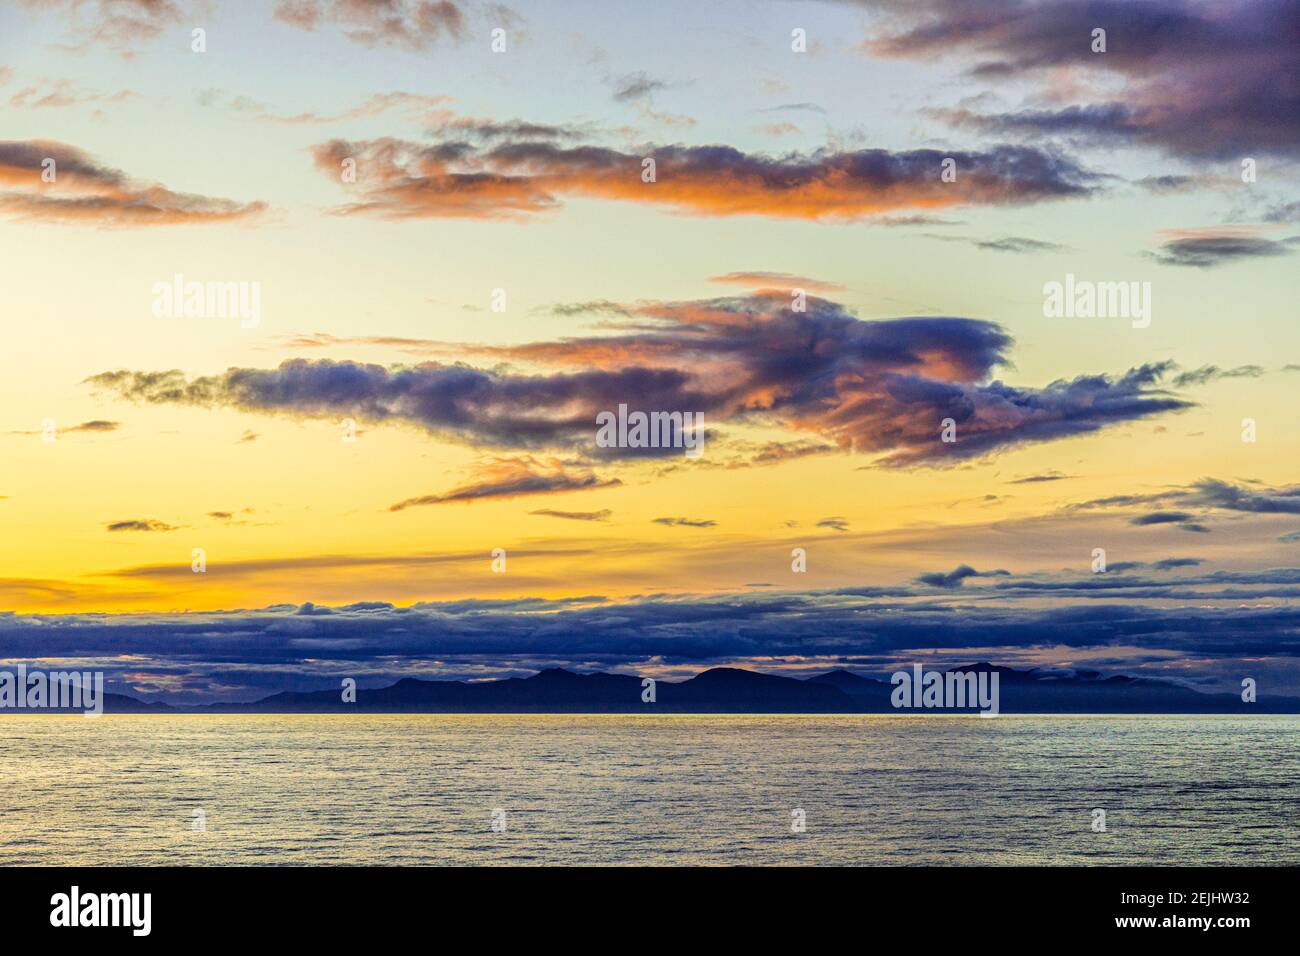 Seltsame Gestalt einer fliegenden Figur oder eines Engels bei Sonnenuntergang über der nordwestlichen Pazifikküste bei Prince of Wales Island, Alaska, USA - von einem Kreuzfahrtschiff aus gesehen. Stockfoto